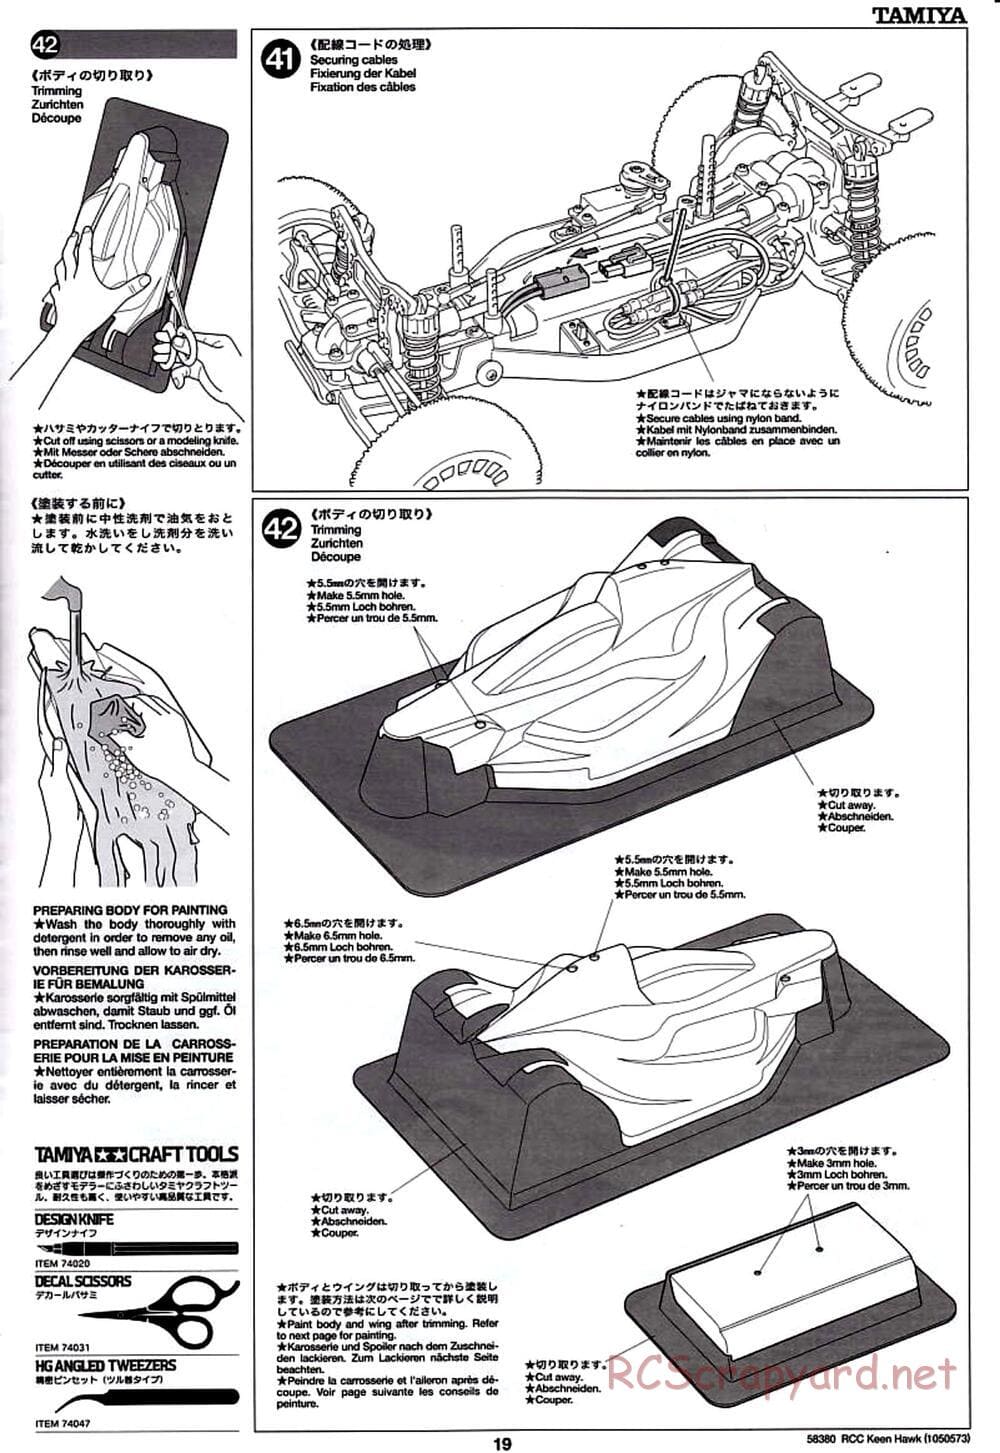 Tamiya - Keen Hawk Chassis - Manual - Page 19